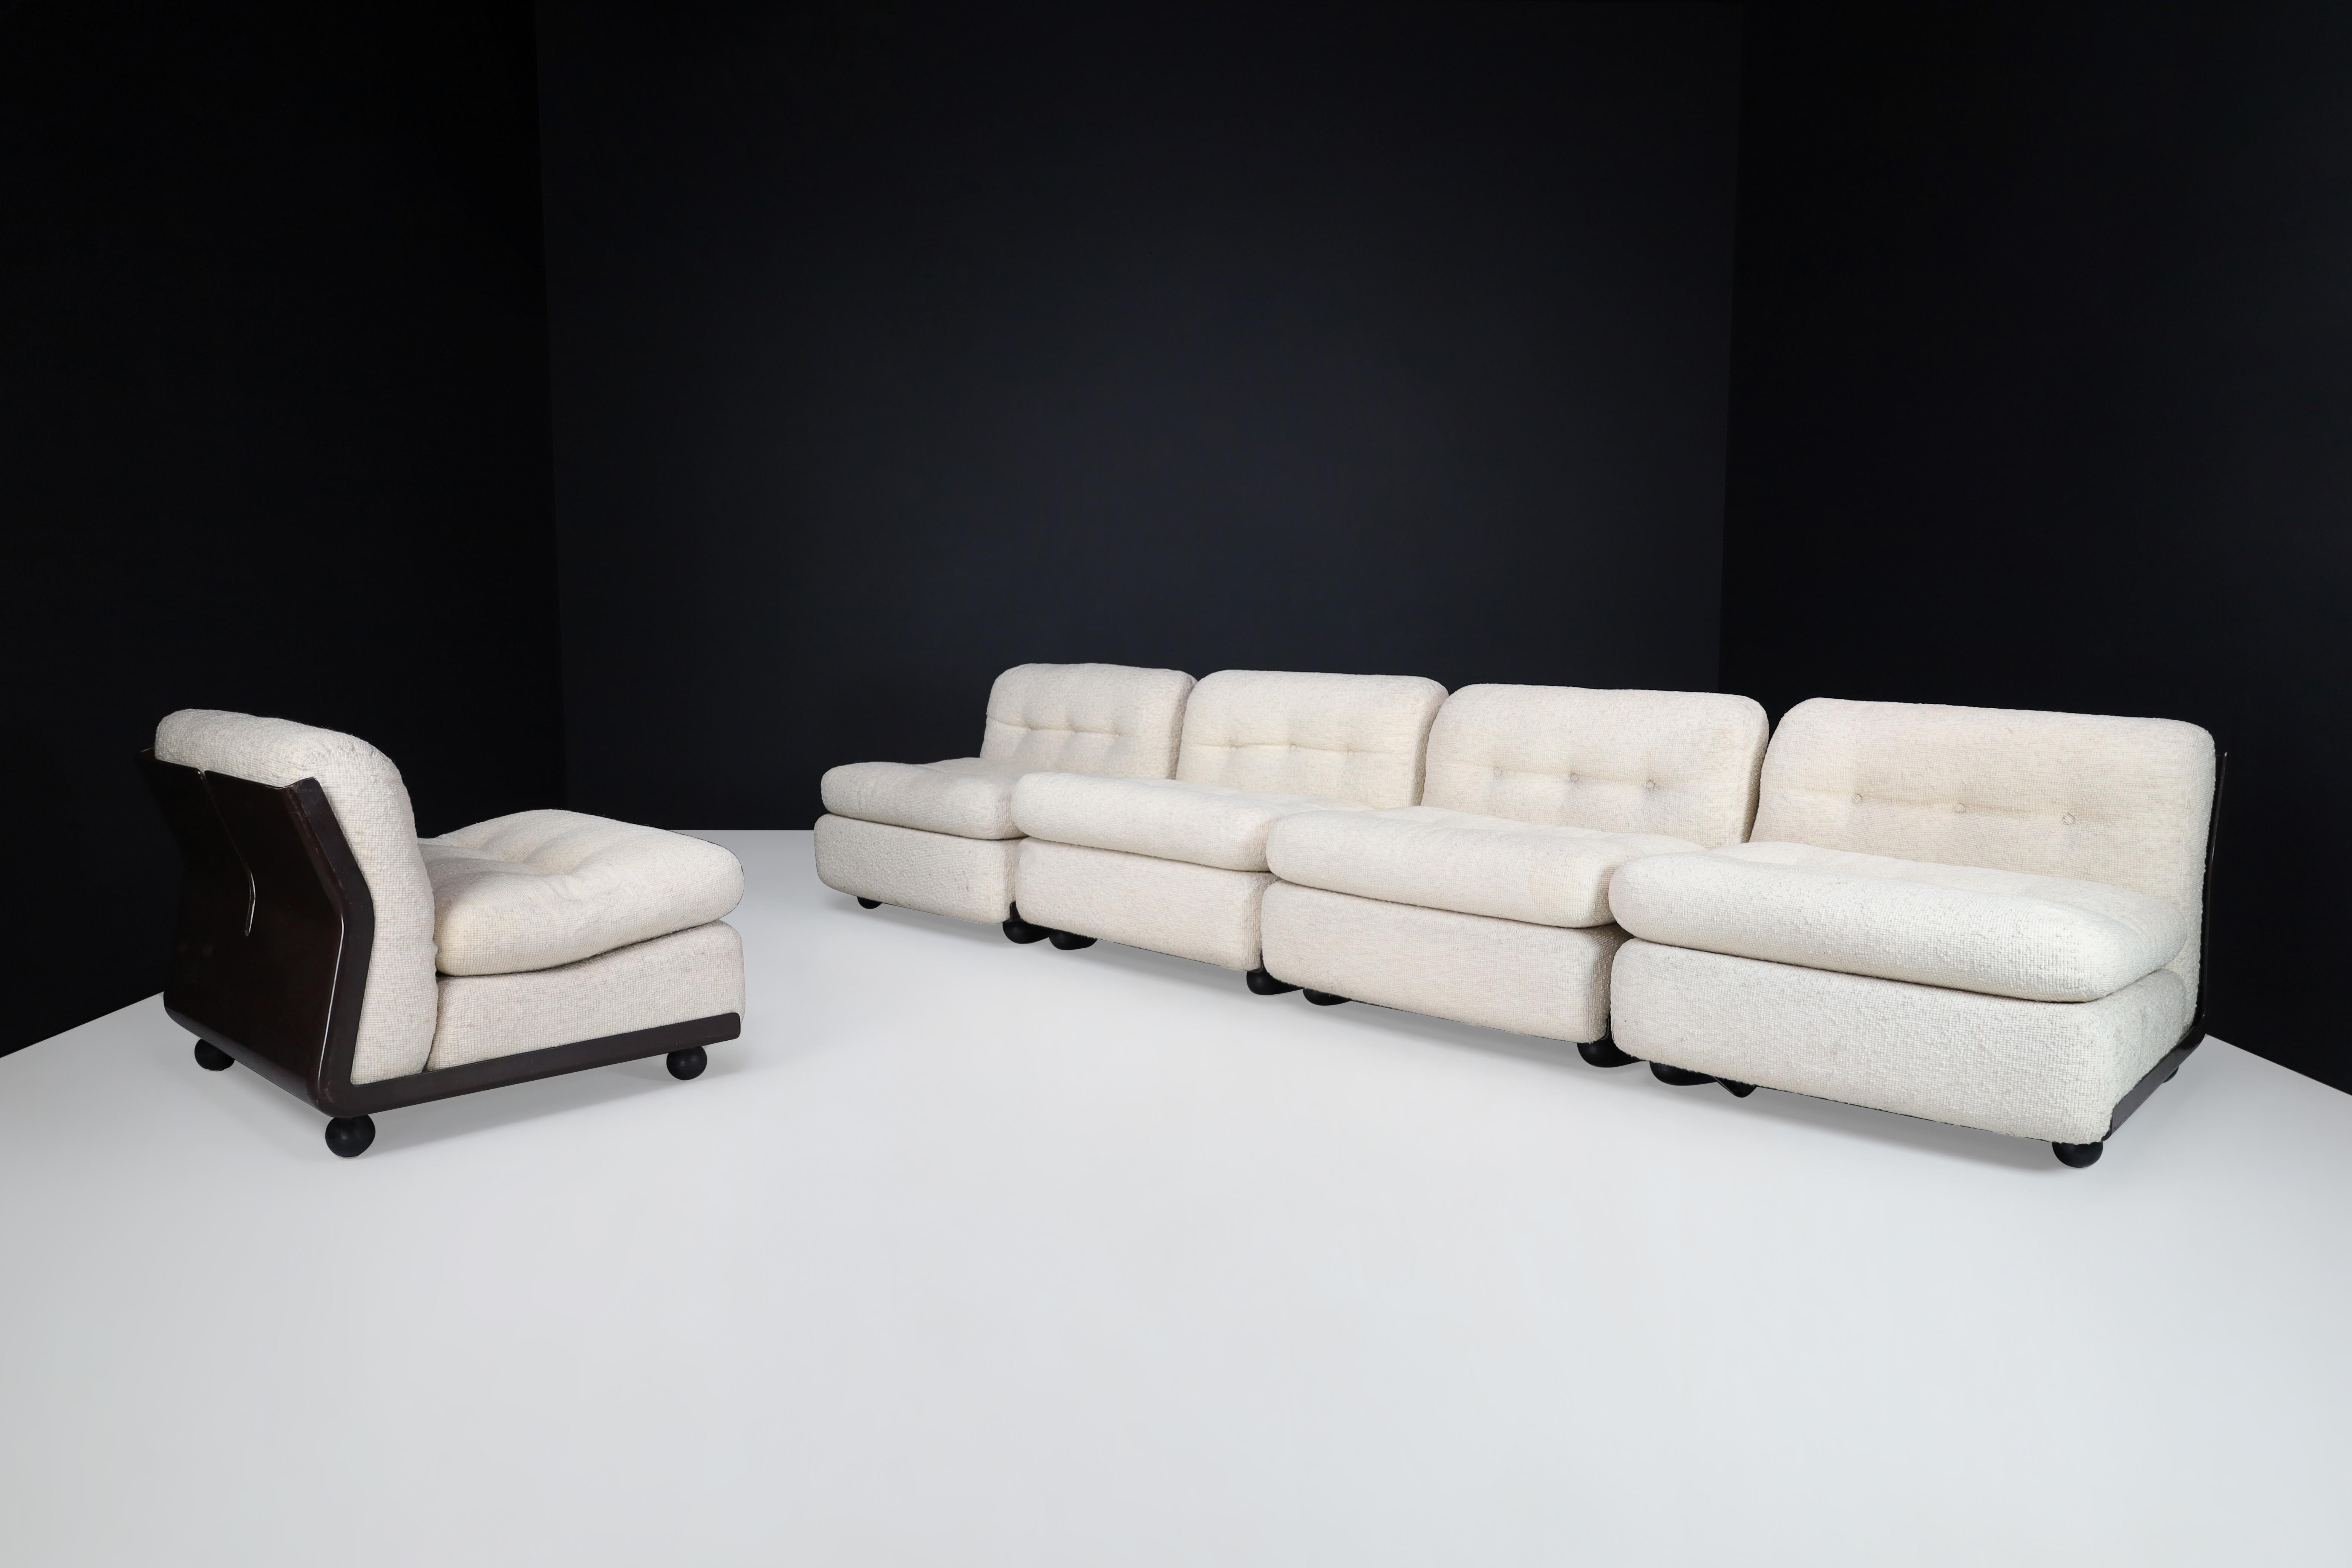 Mario Bellini Amanta B&B Italia Modulares Sofa/ fünf Sitze, Italien 1970er

Sie suchen ein großes und bequemes Sofa, das Platz für Ihre ganze Familie bietet? Das modulare Sofa 